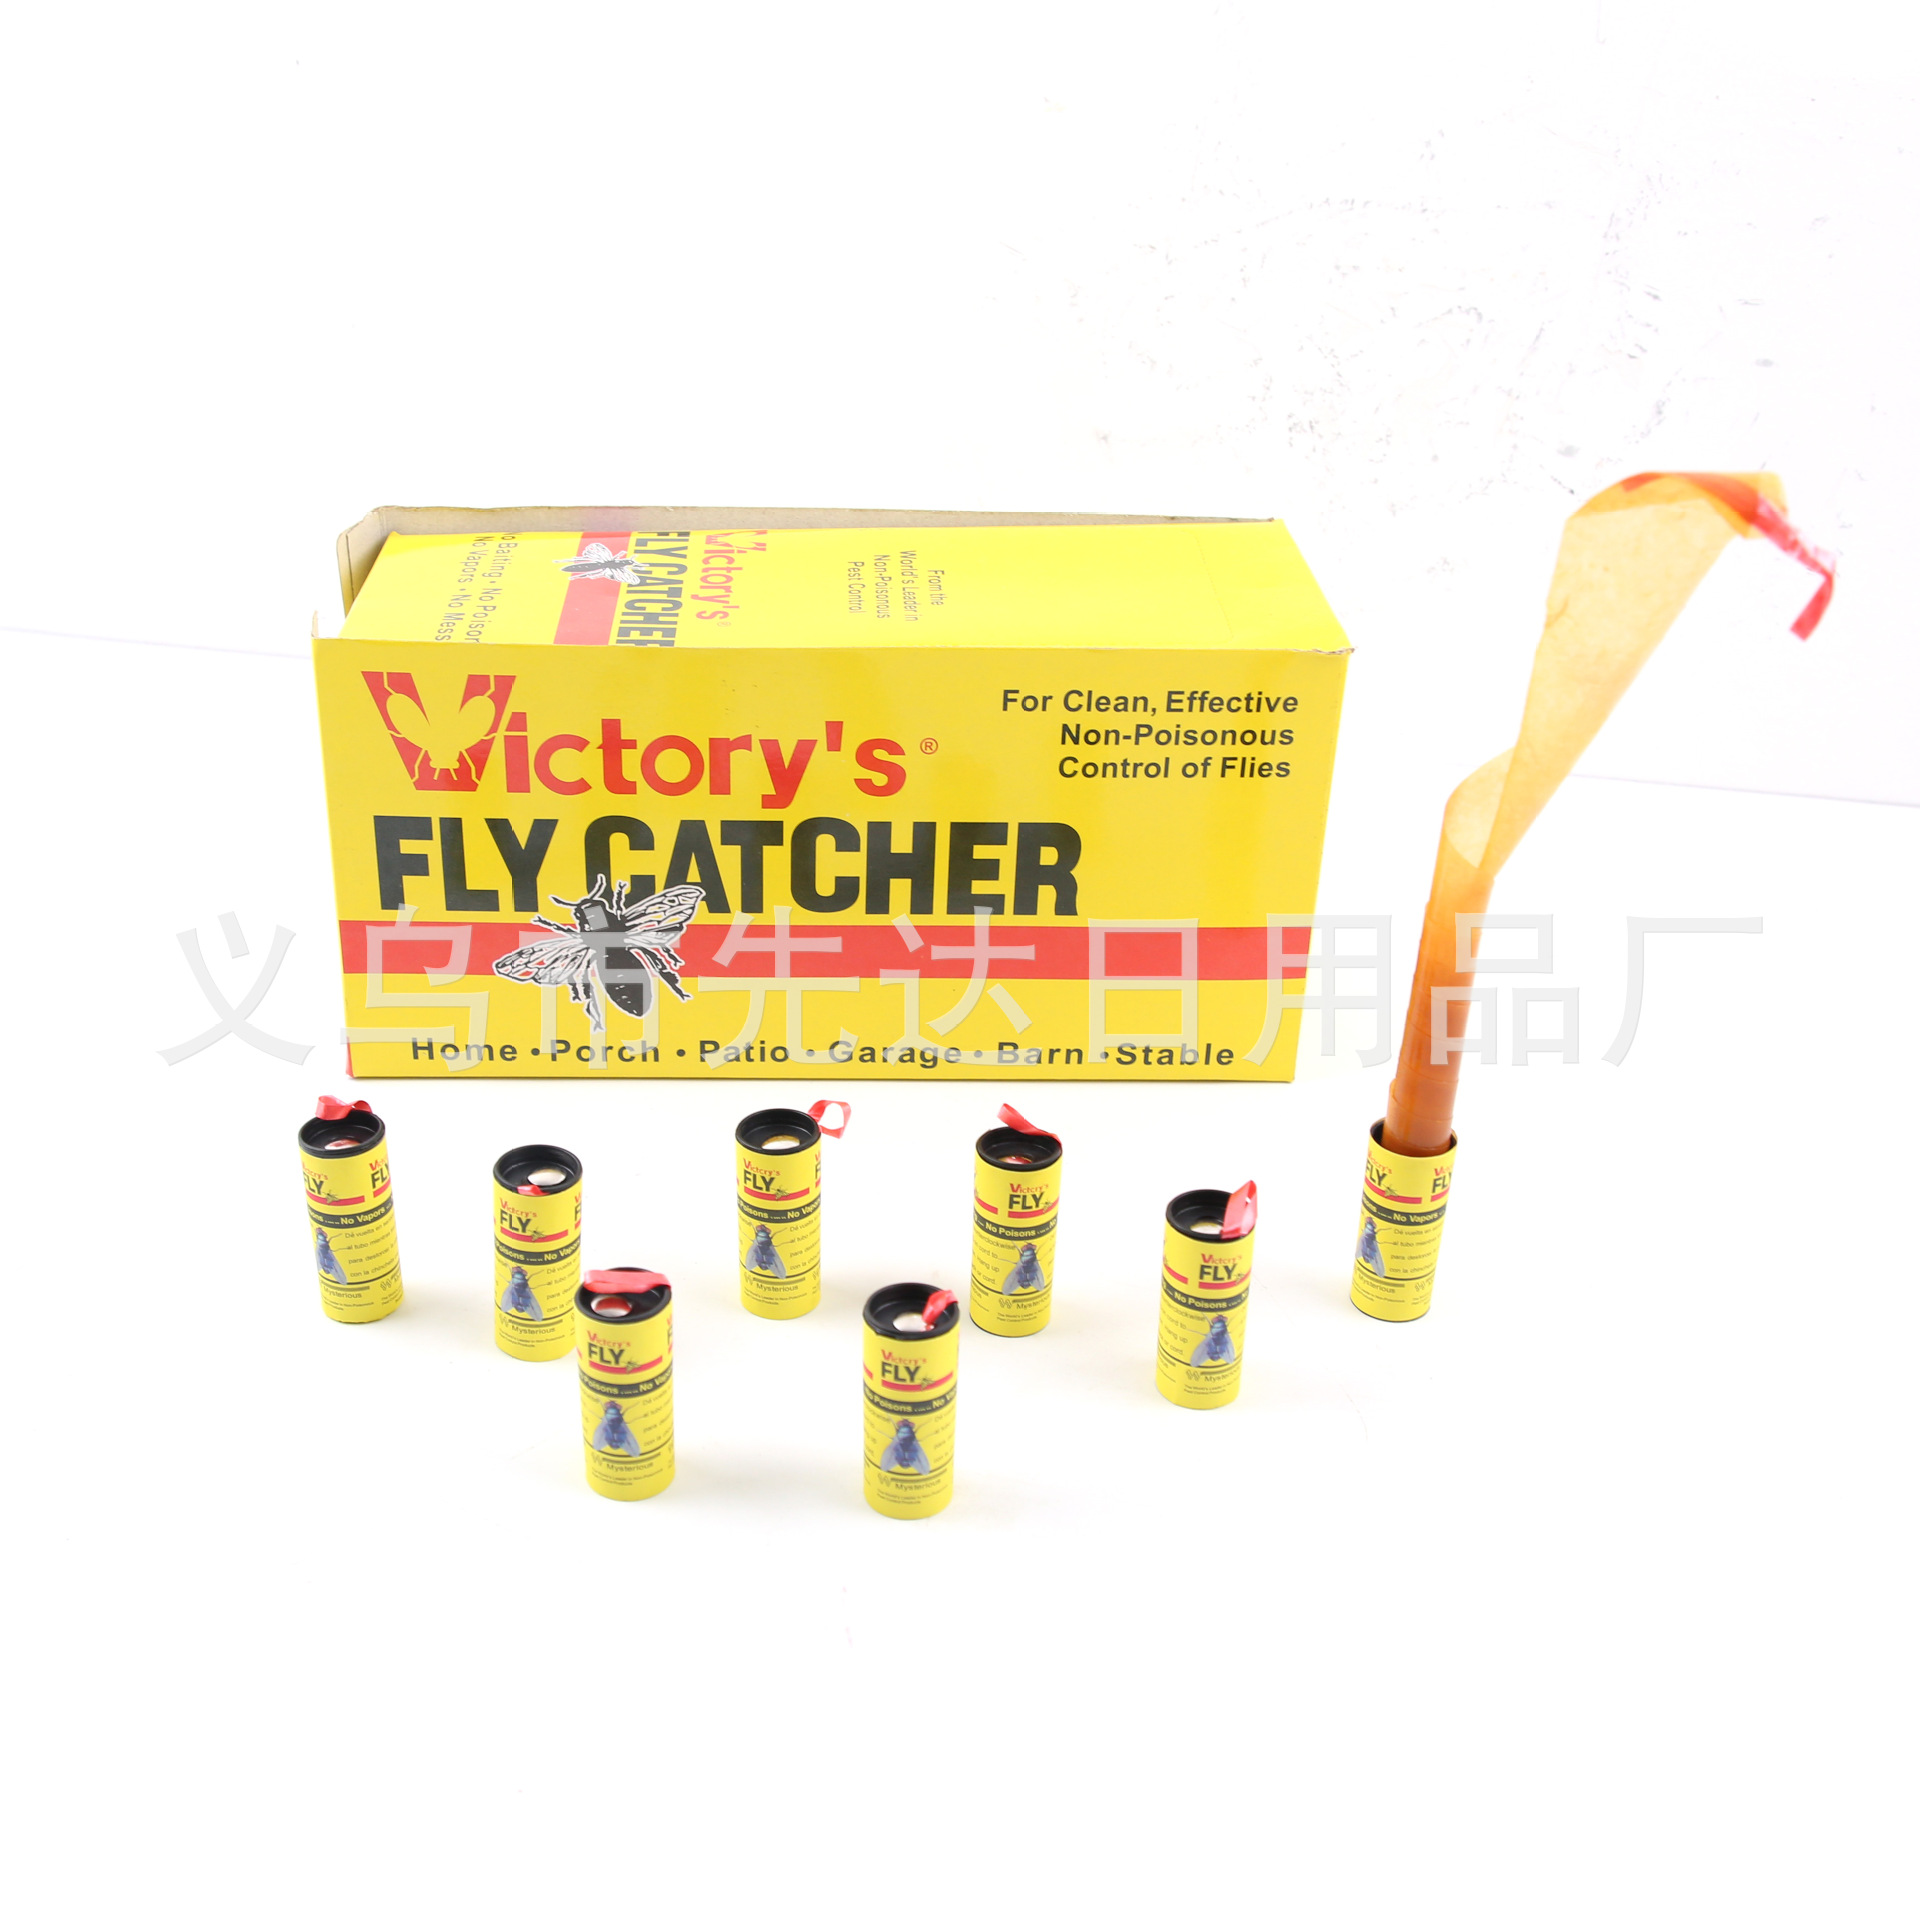 Green Label Fly Sticky Fly Roll Sticky Fly Glue Fly Coil Flypaper Fly Sticker